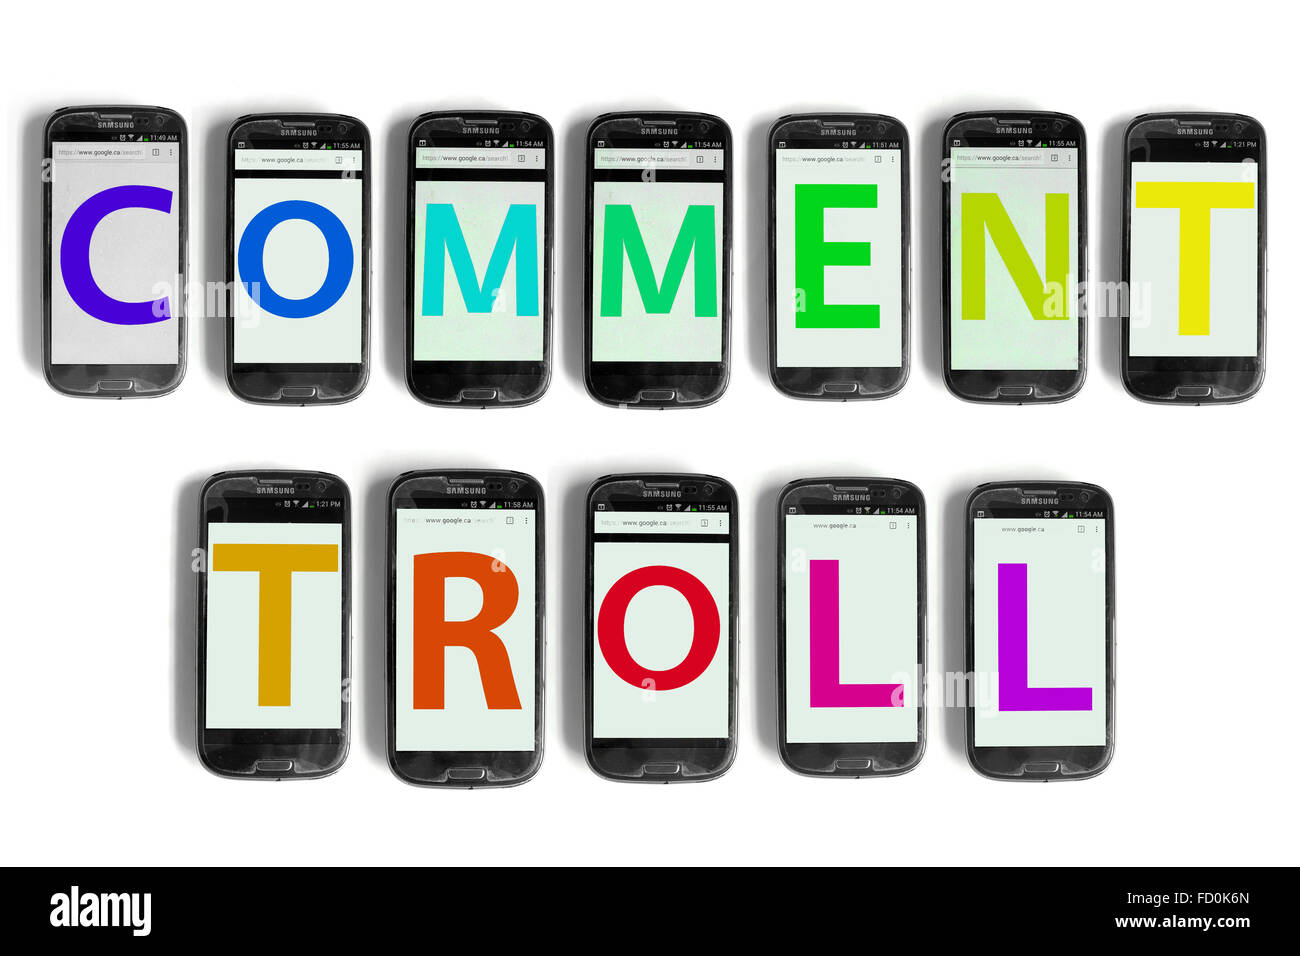 Trolling: definición y consejos para hacer frente a los trolls - IONOS